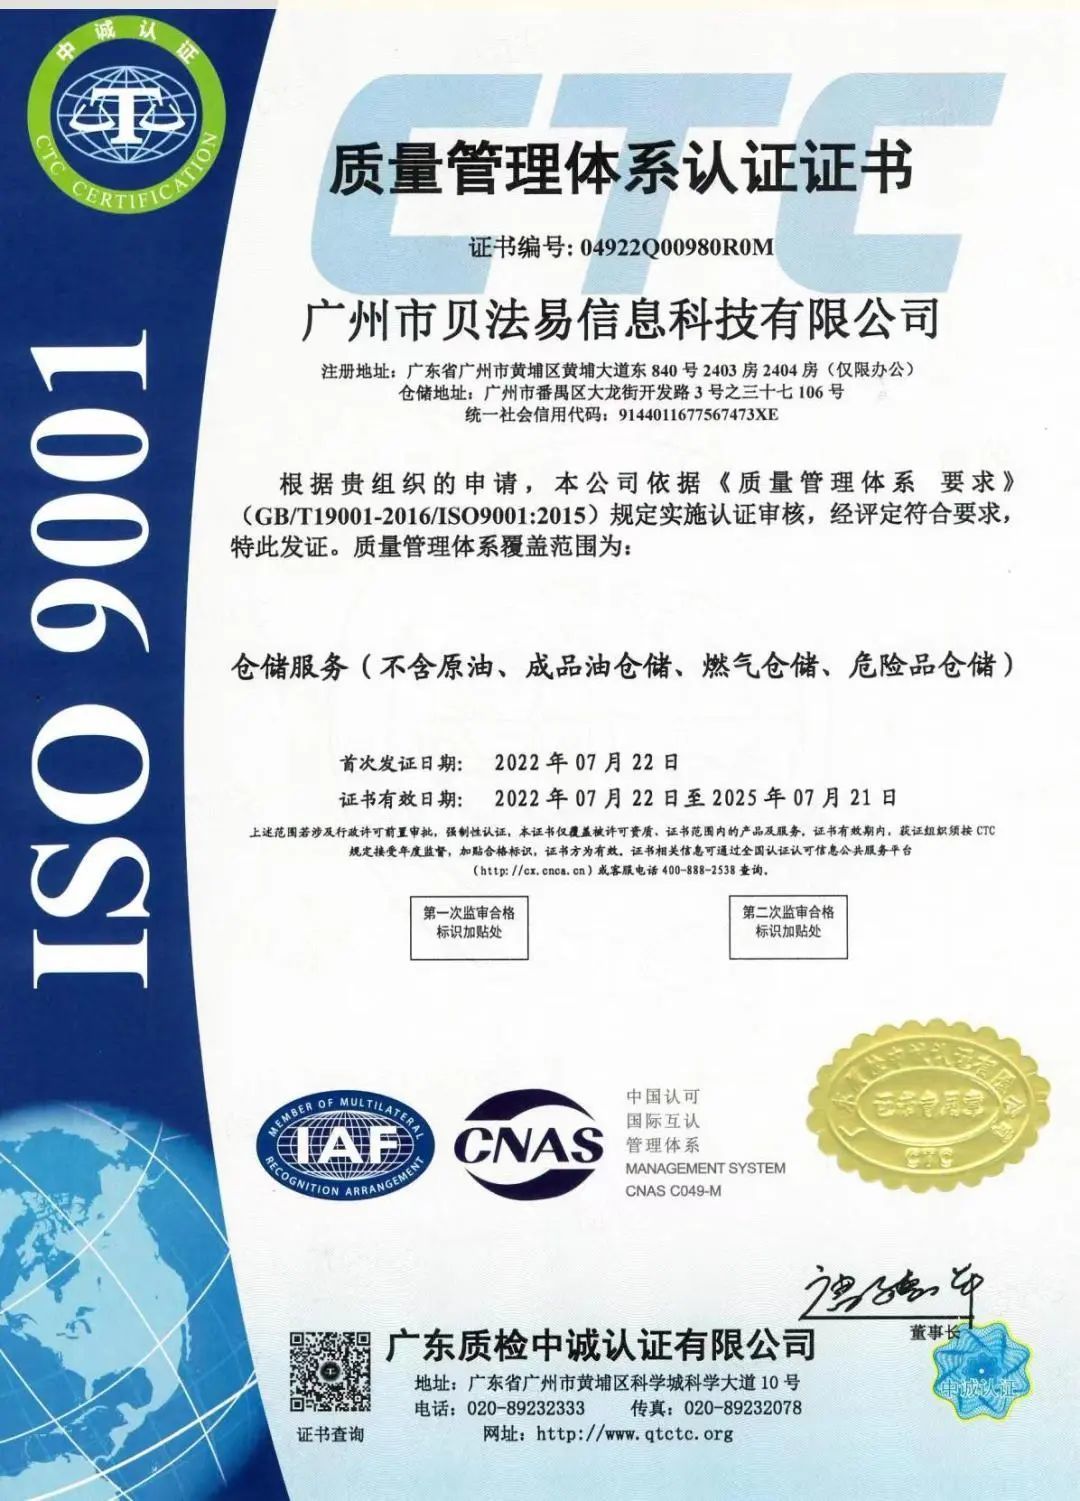 跨境物流服务商出口易「仓储服务」获ISO质量管理体系认证